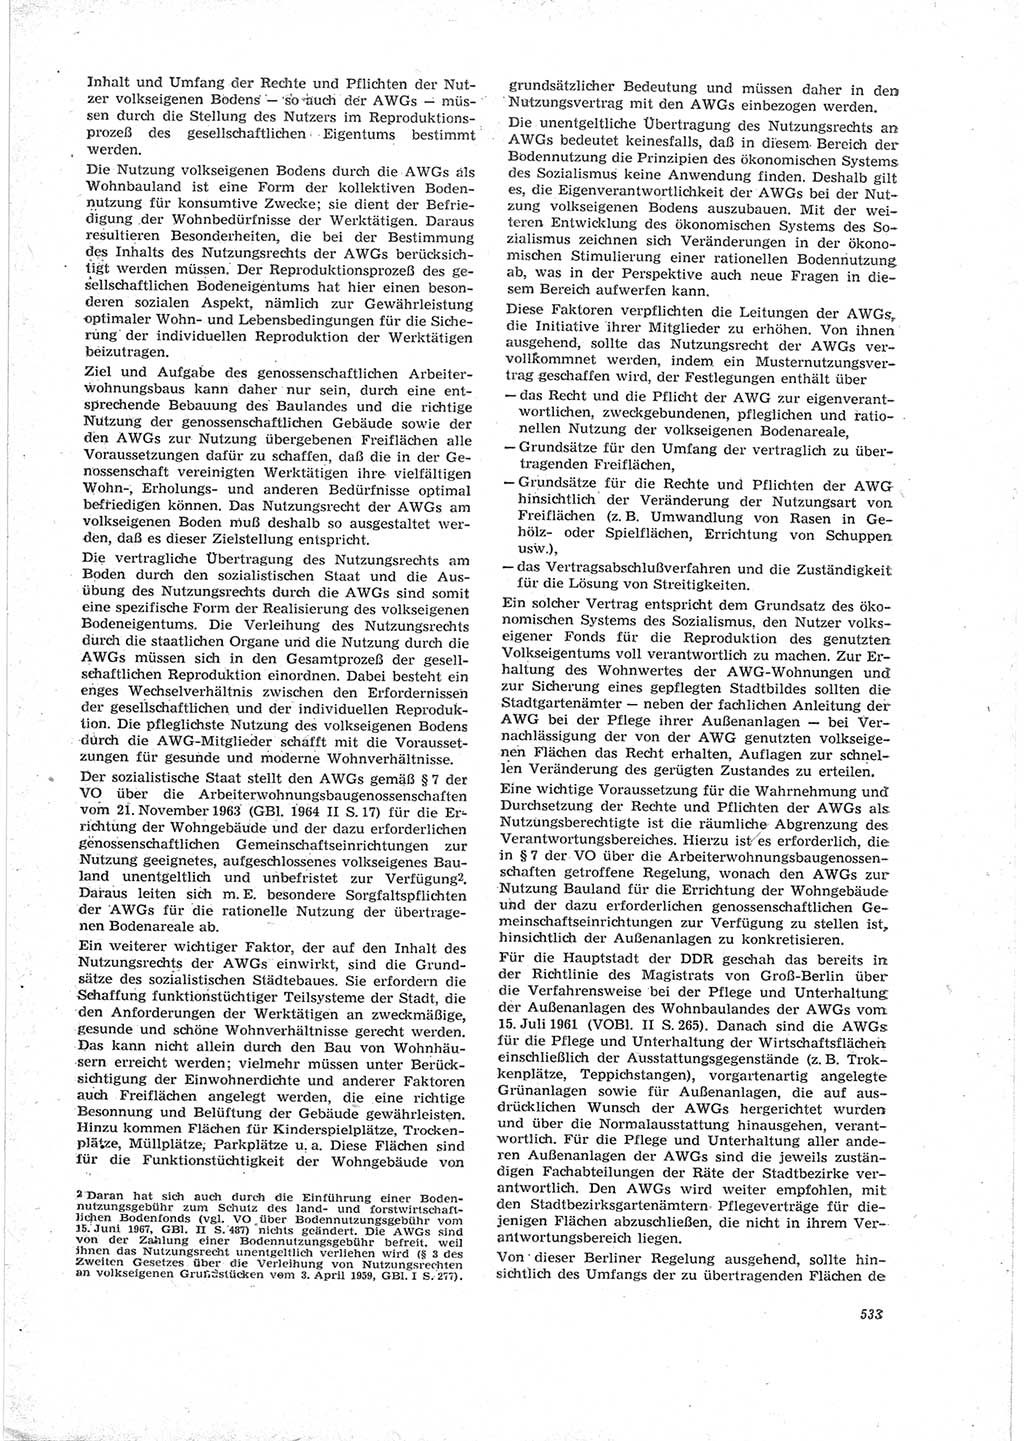 Neue Justiz (NJ), Zeitschrift für Recht und Rechtswissenschaft [Deutsche Demokratische Republik (DDR)], 23. Jahrgang 1969, Seite 533 (NJ DDR 1969, S. 533)